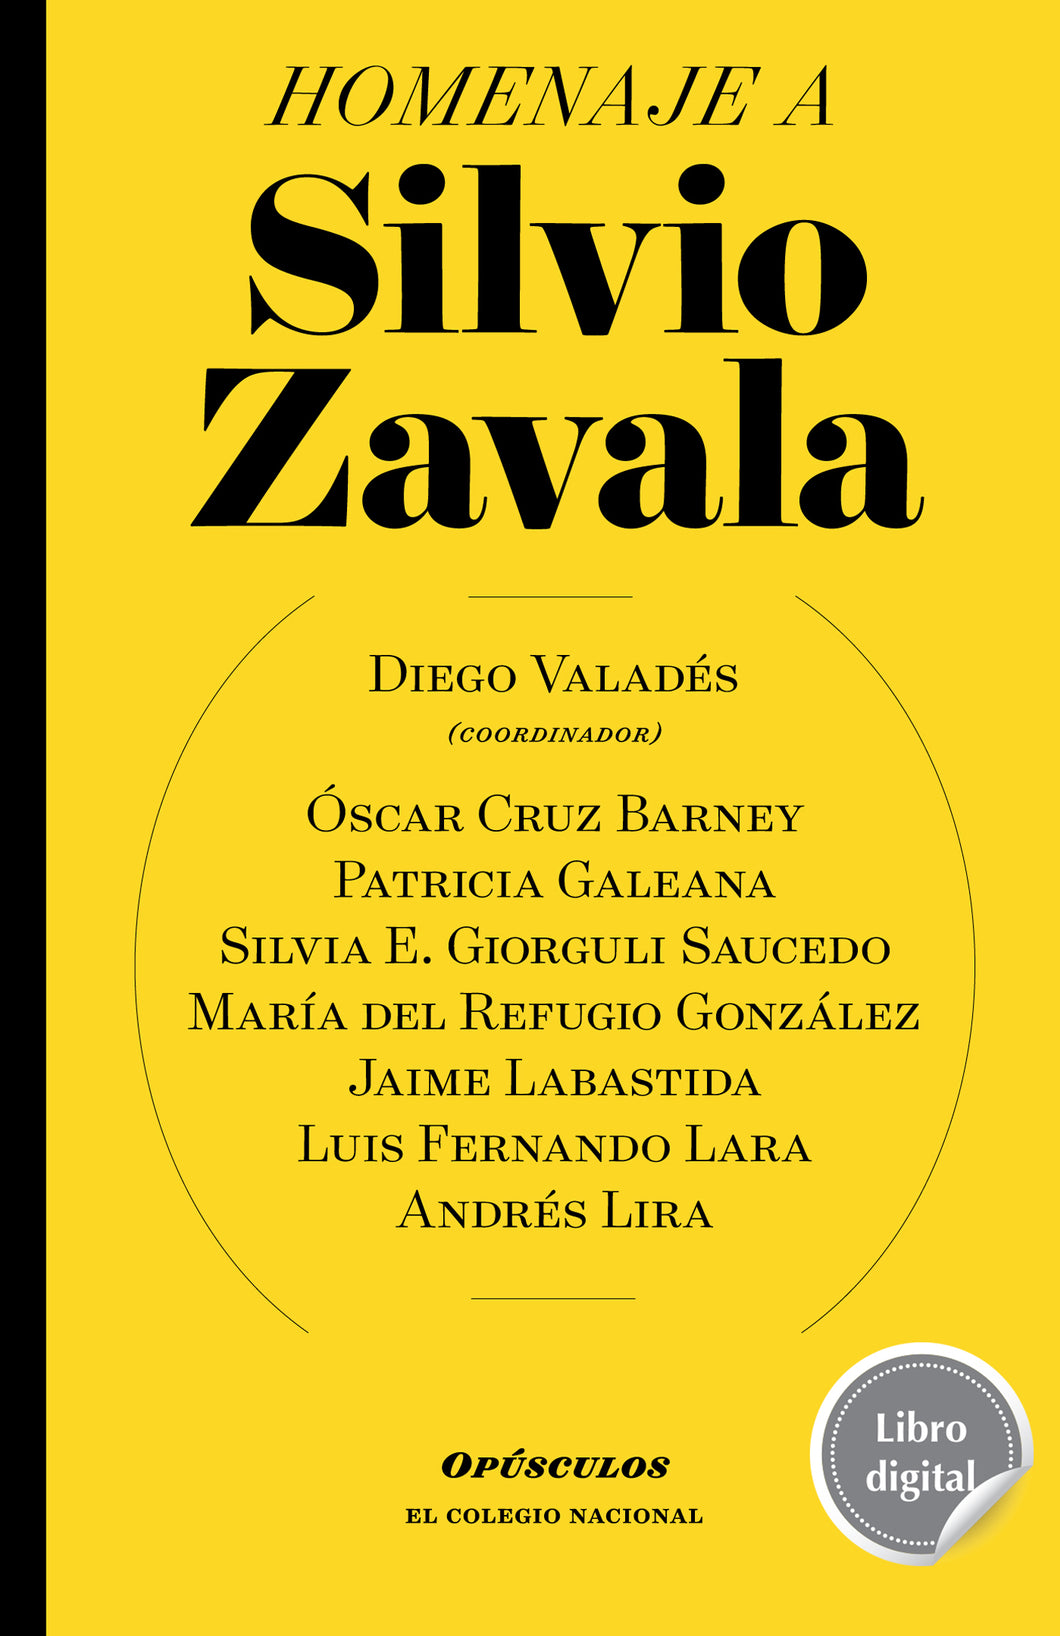 Homenaje a Silvio Zavala